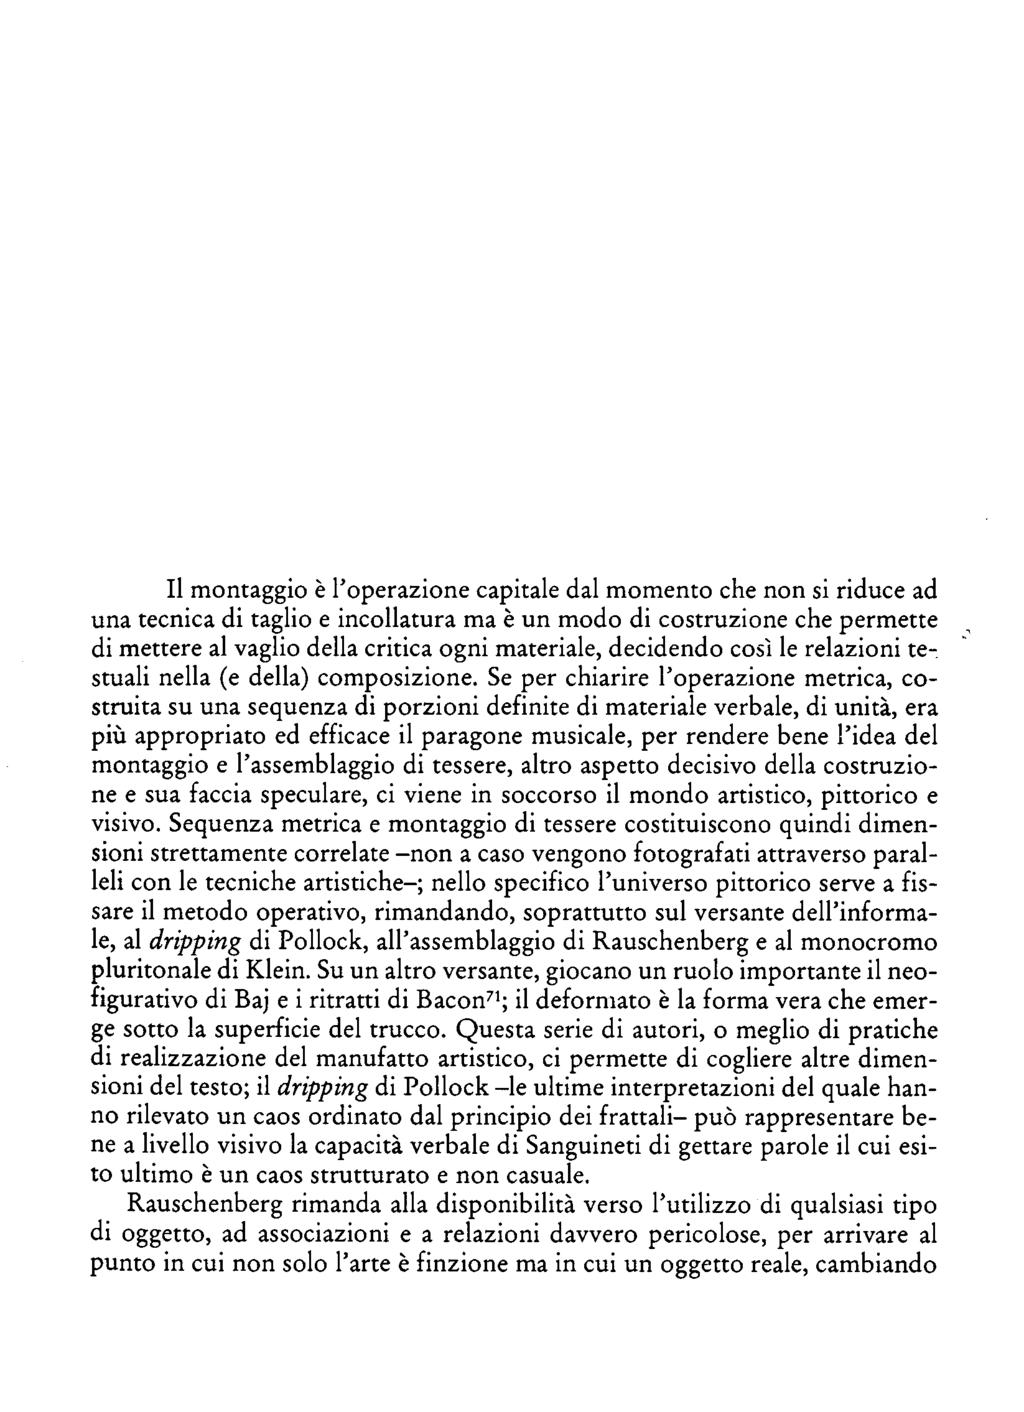 Erminio Risso, da: Laborintus di Edoardo Sanguineti. Testo e commento Lecce, Manni, 2006 [.